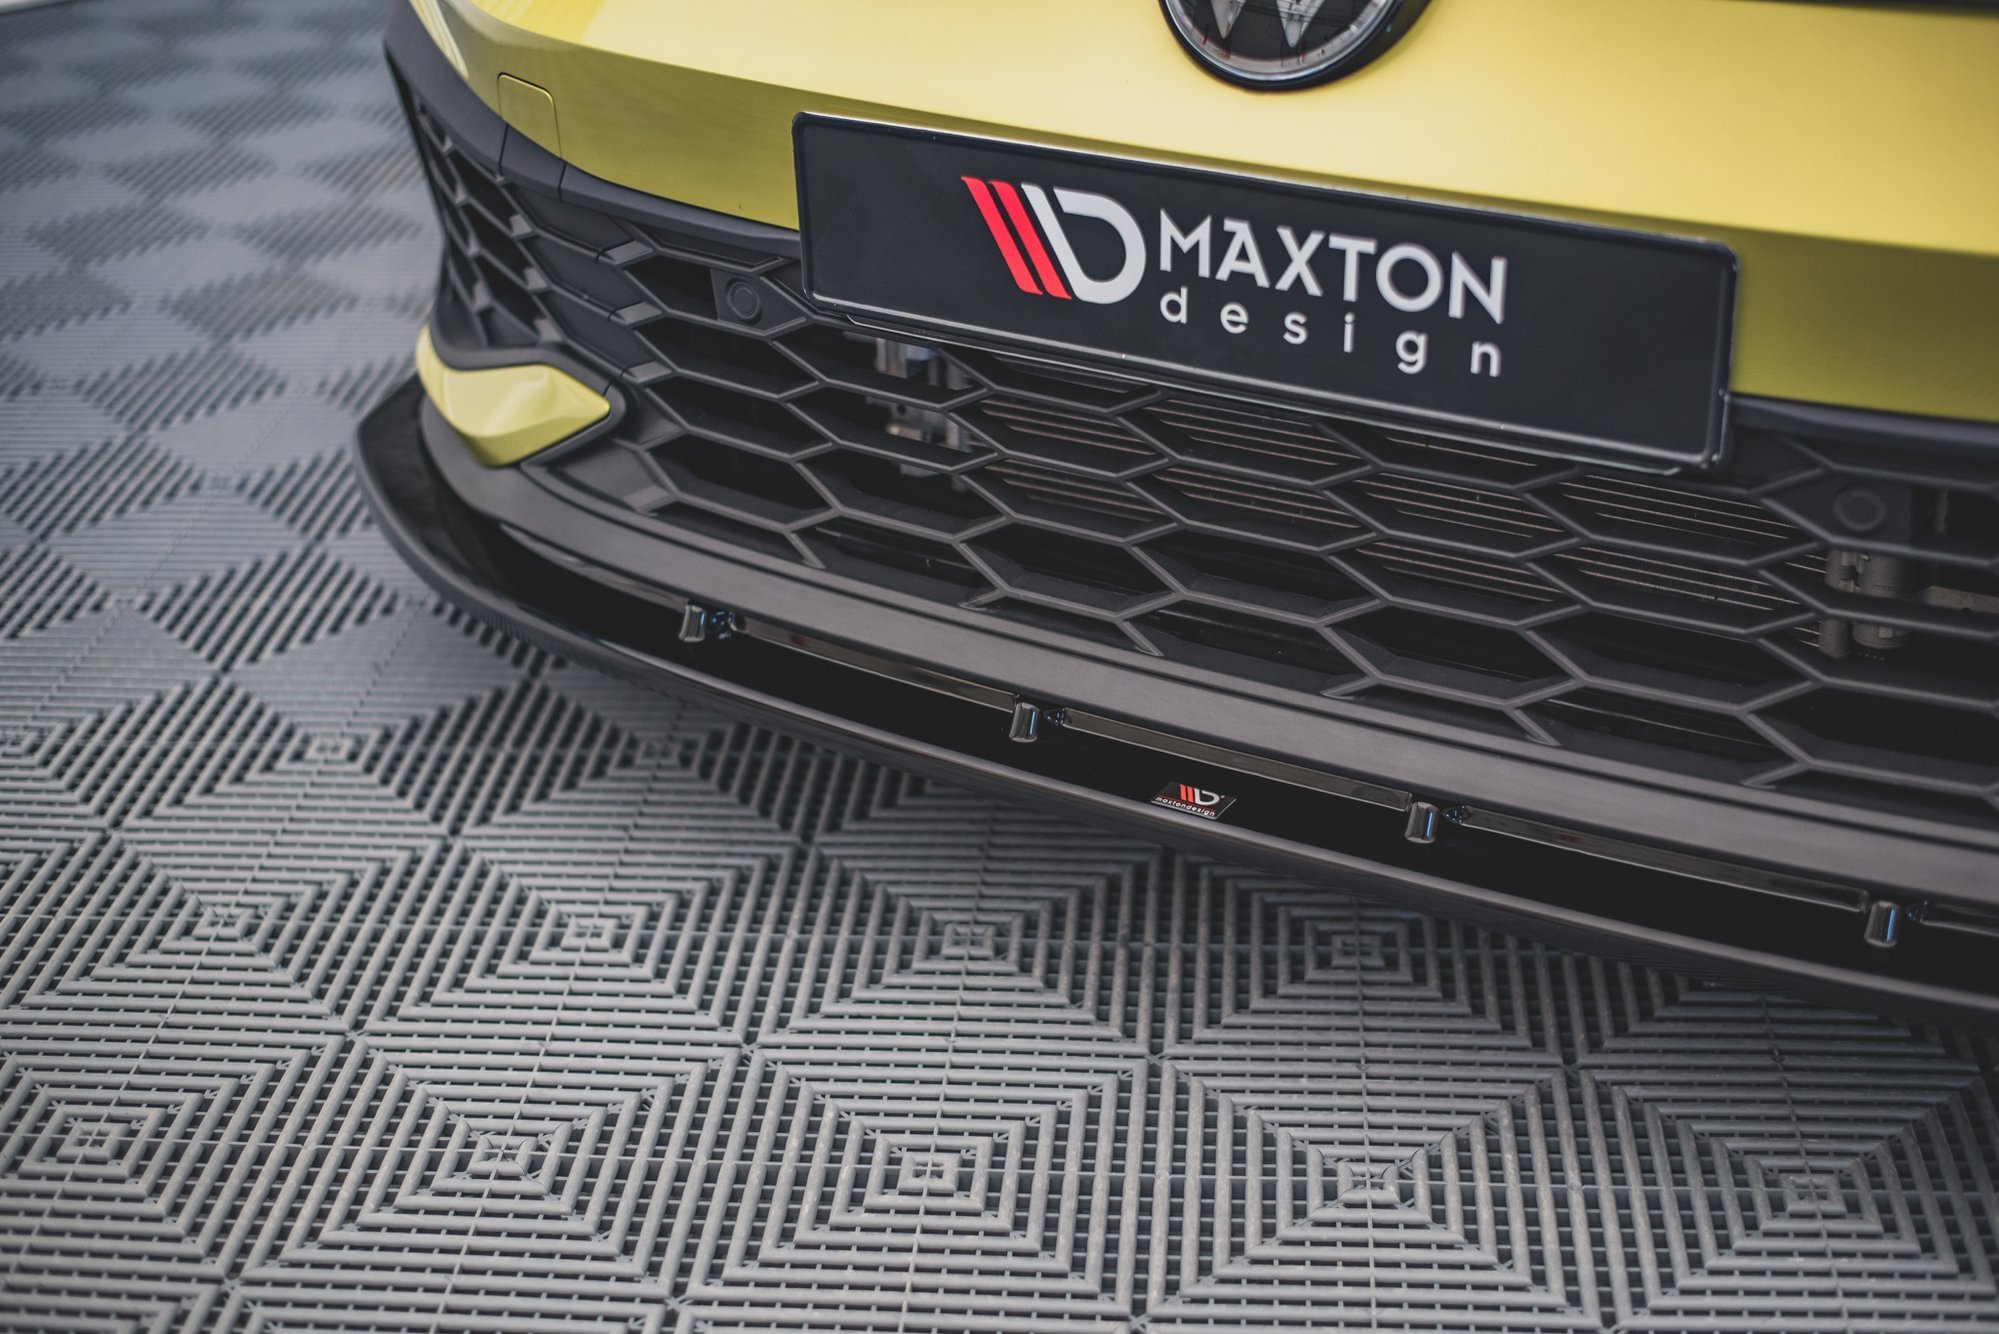 Maxton Design Front Ansatz V.4 für Volkswagen Golf 8 GTI Clubsport schwarz Hochglanz